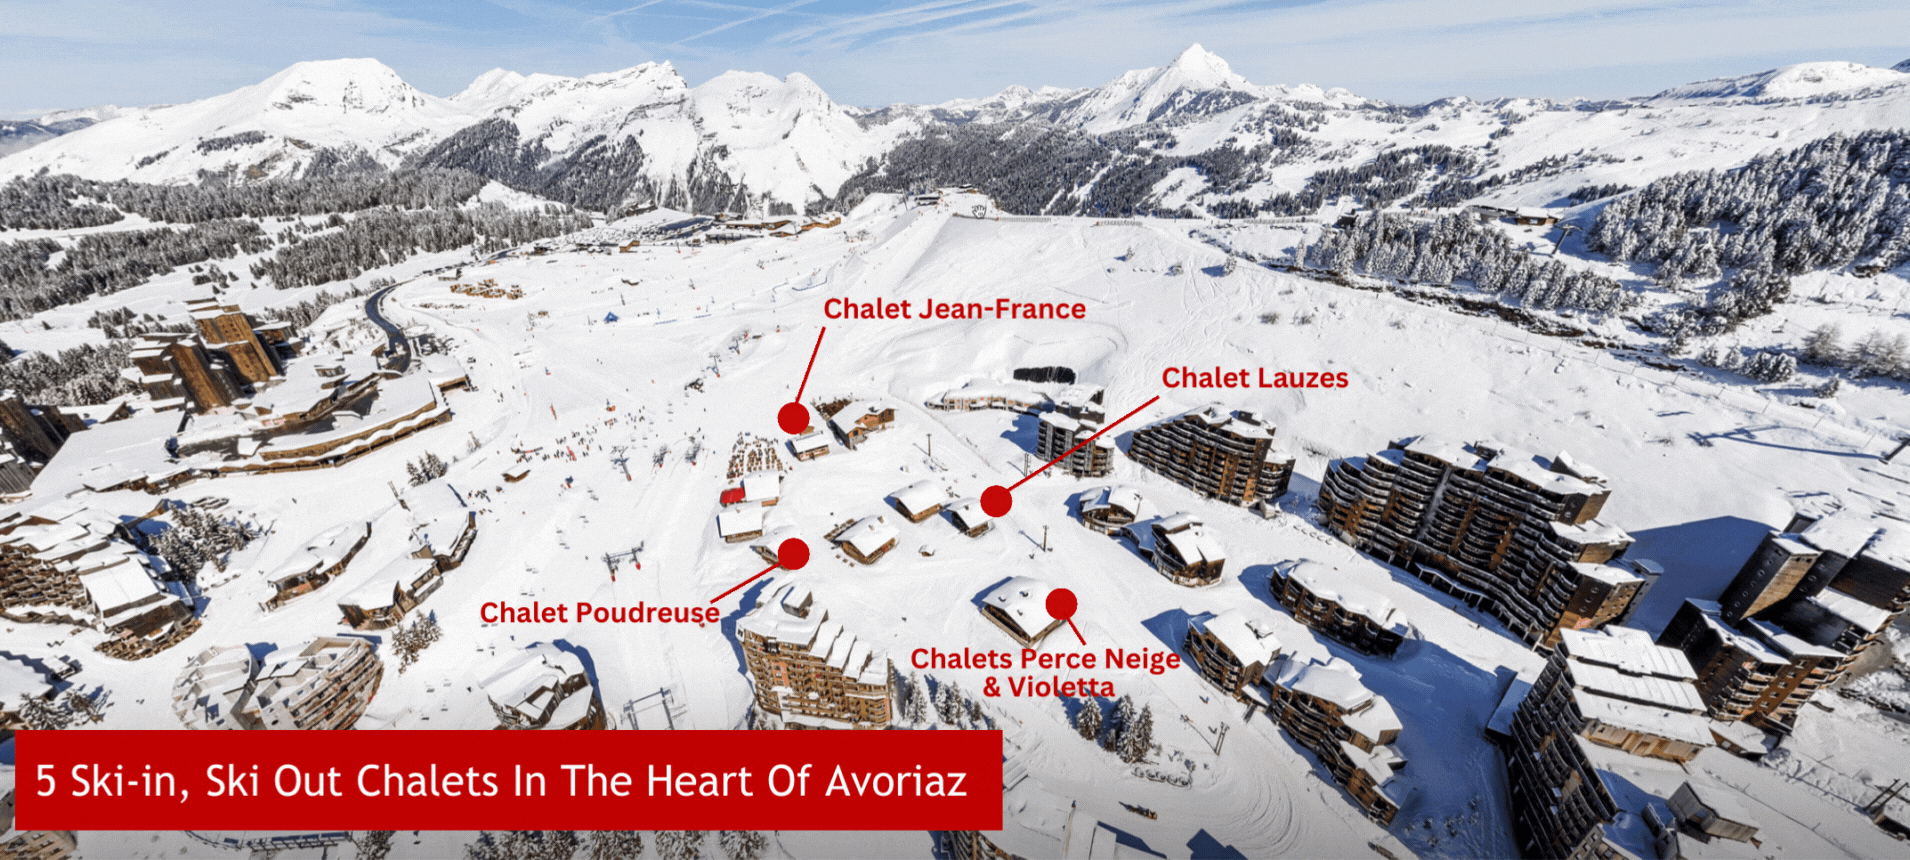 Avoriaz Chalets - Ski-in, Ski-out